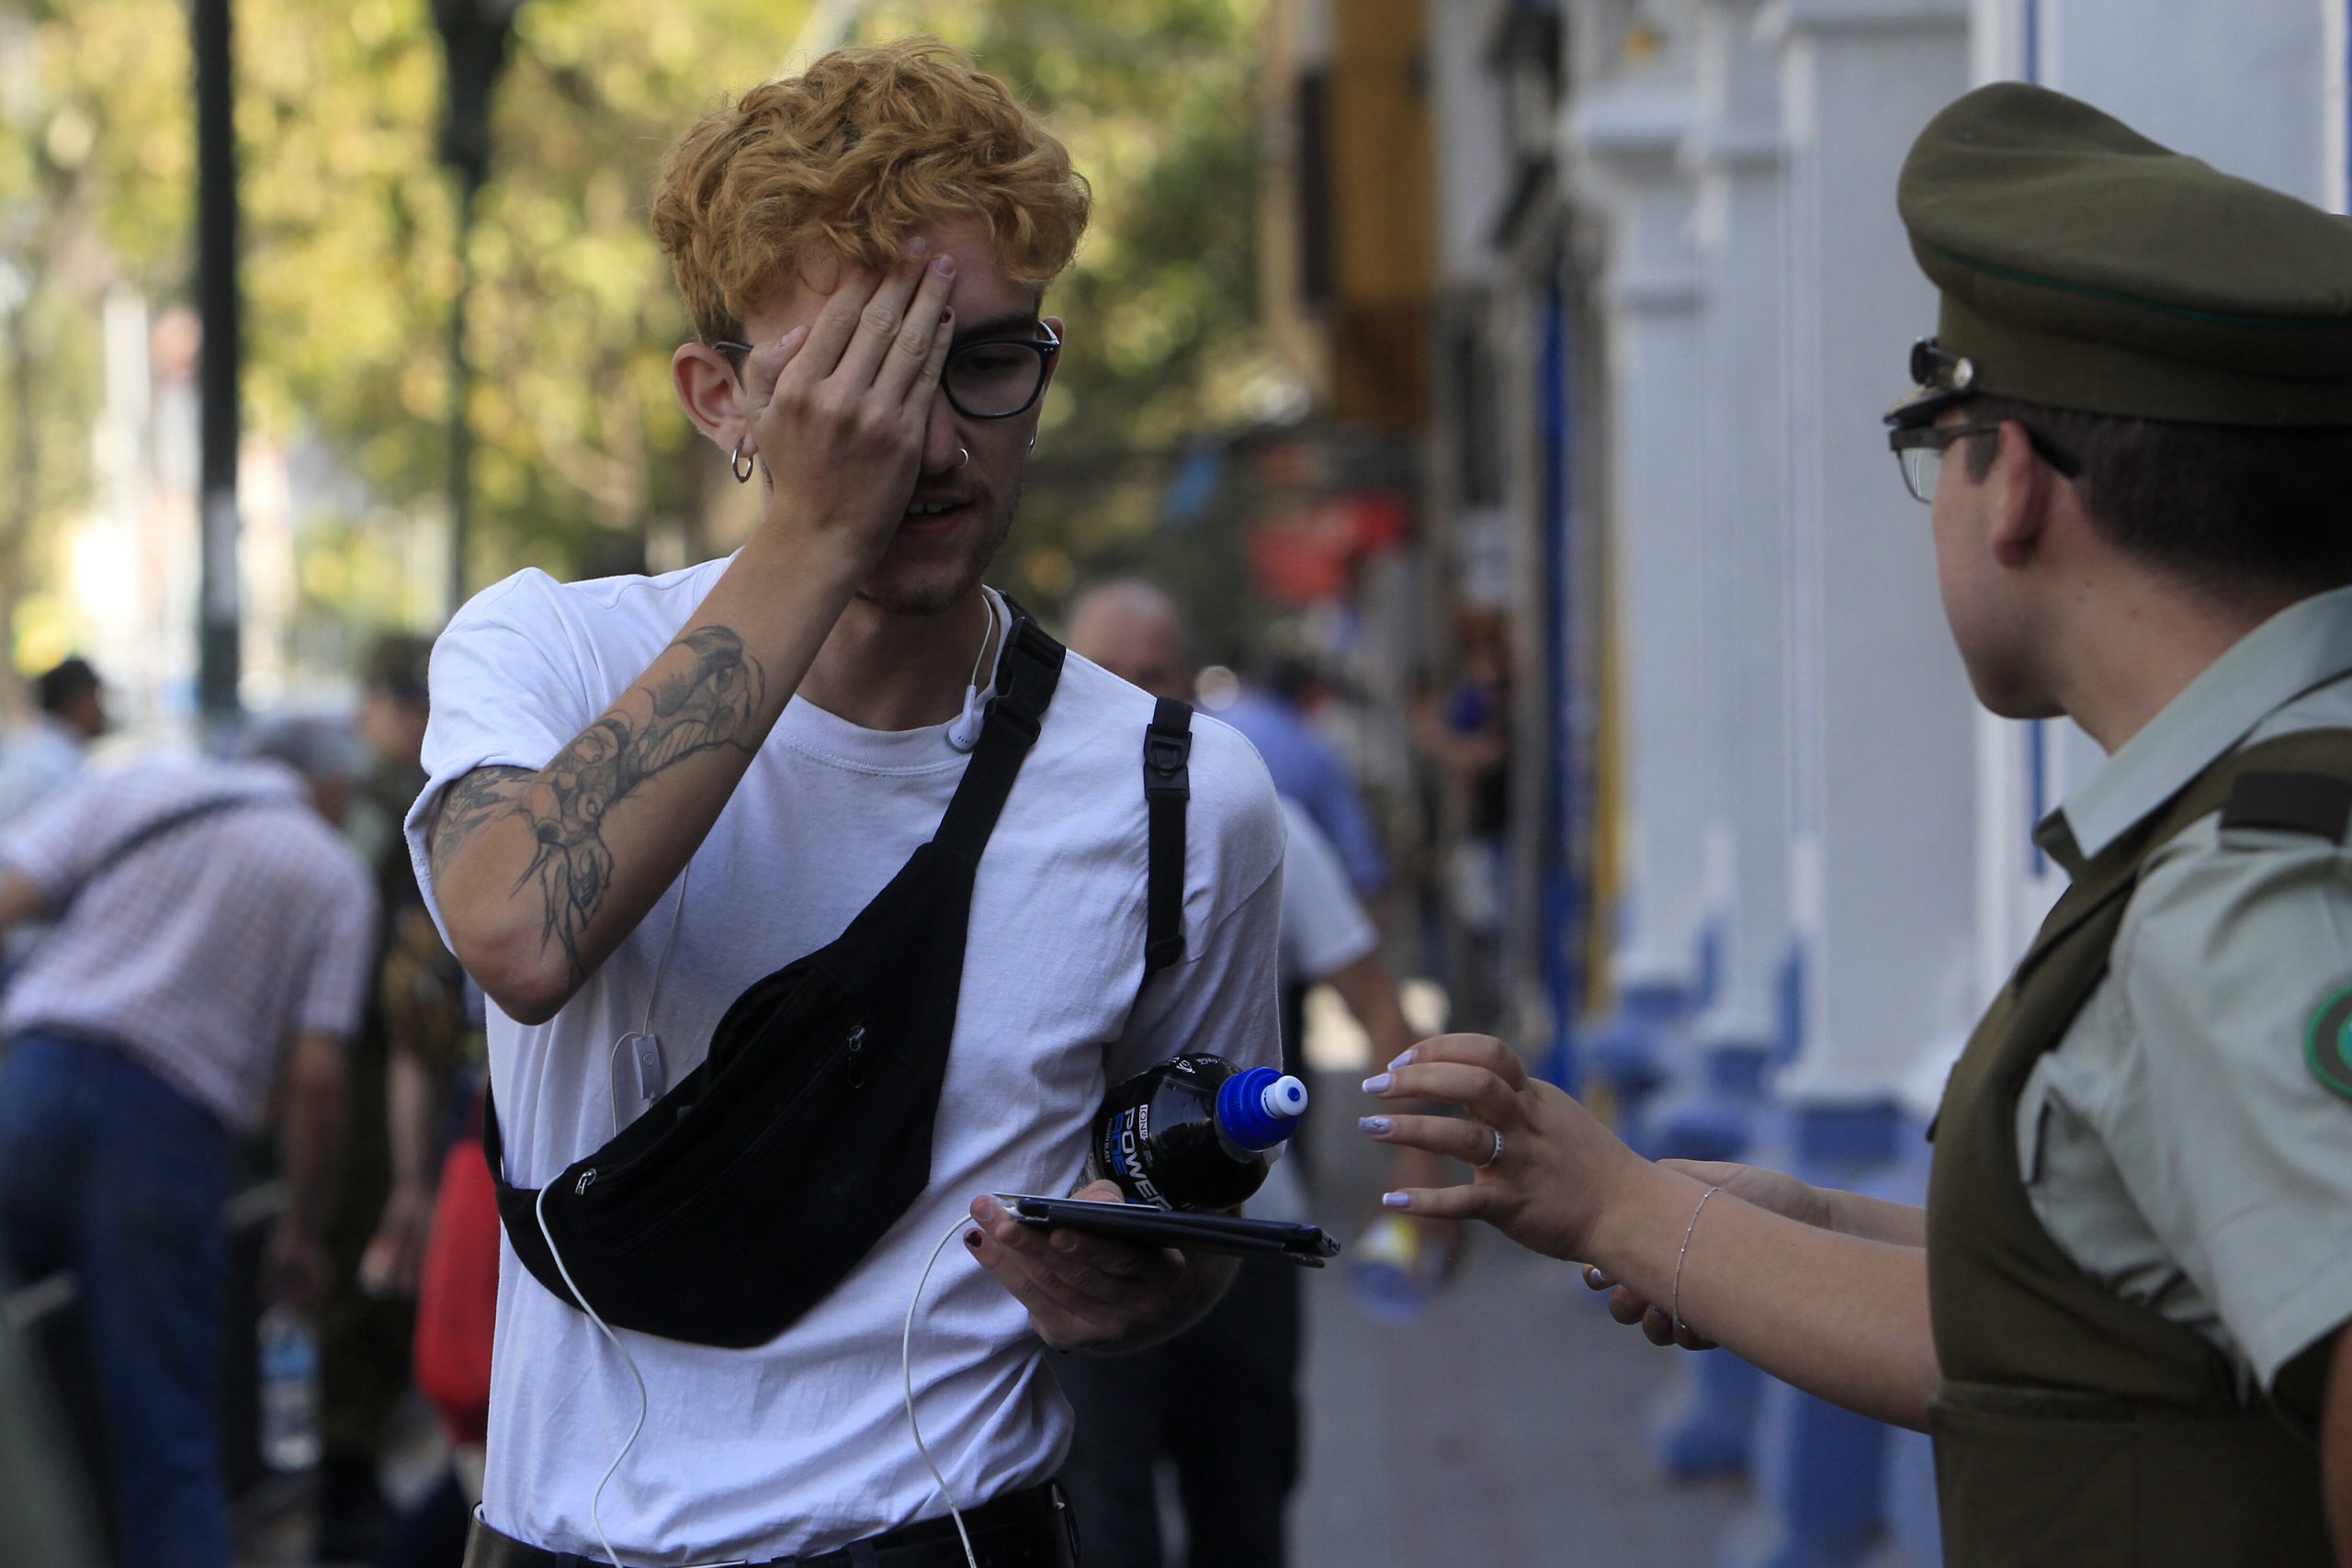 Segundo dia de Rendicion de la PSU en el colegio Republica Argentina, ubicado en calle Vicuna Mackenna. En la imagen un joven se tapa un ojo frente a Carabineros.